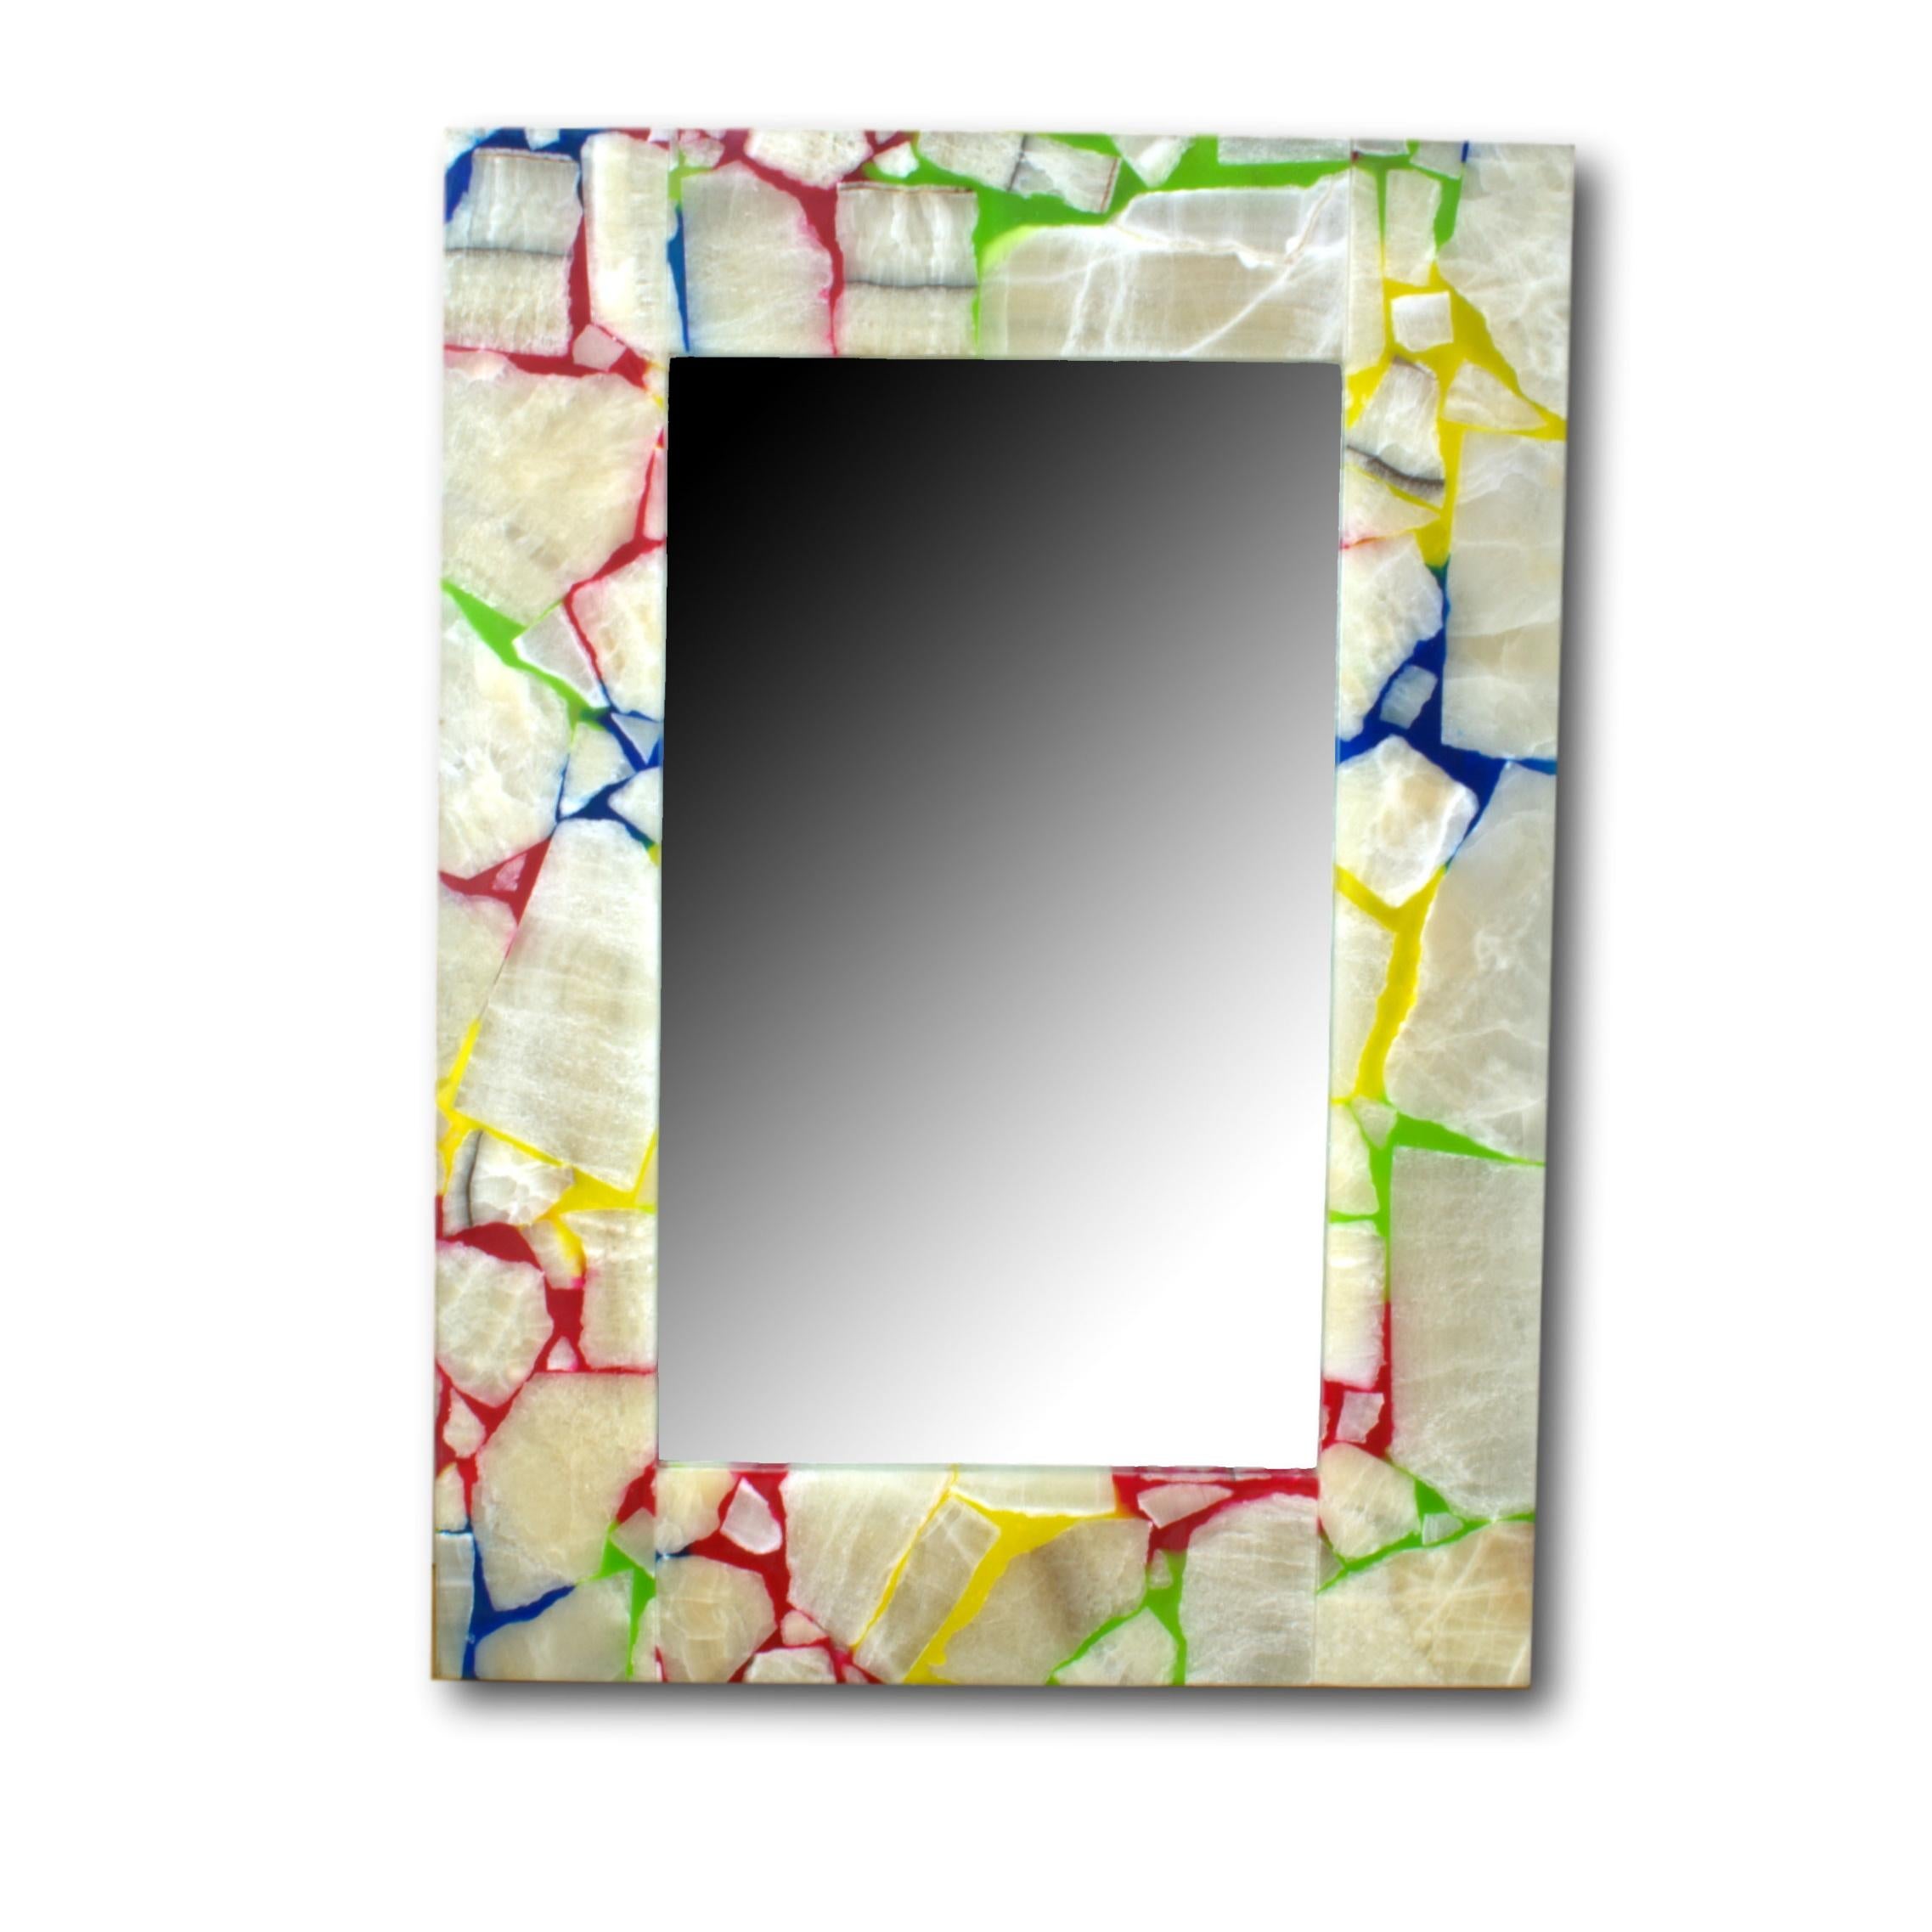 Rechteckiger Spiegel mit dickem Rahmen aus Onyx.